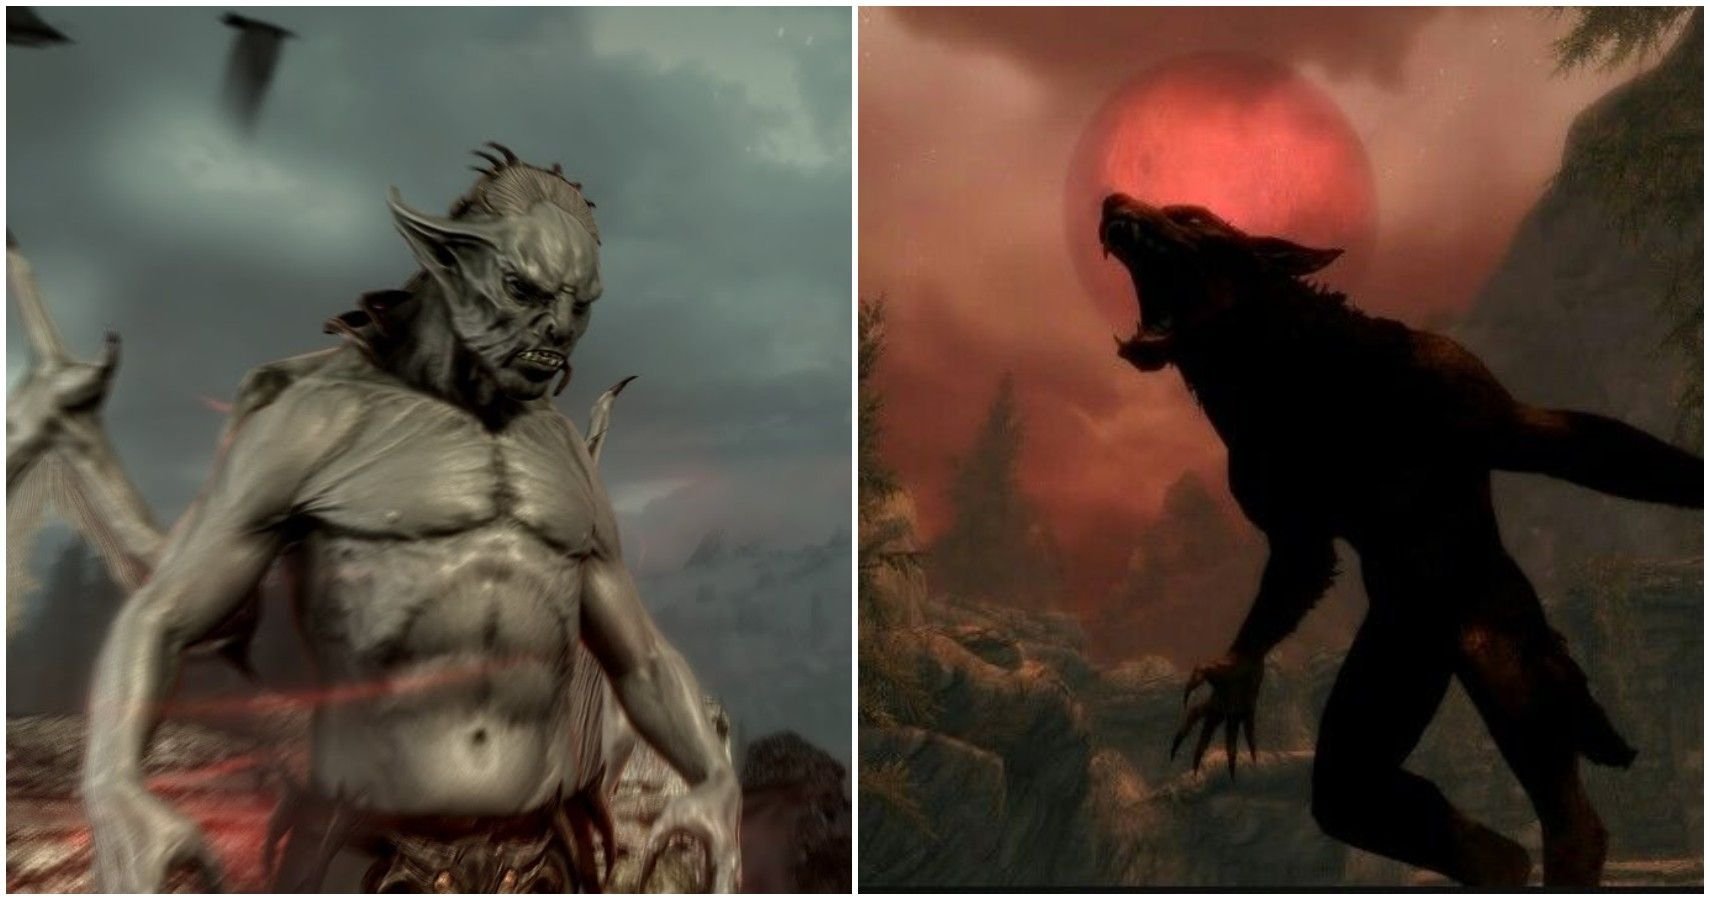 Skyrim: Vampire Vs. Werewolf - Which Is Better?